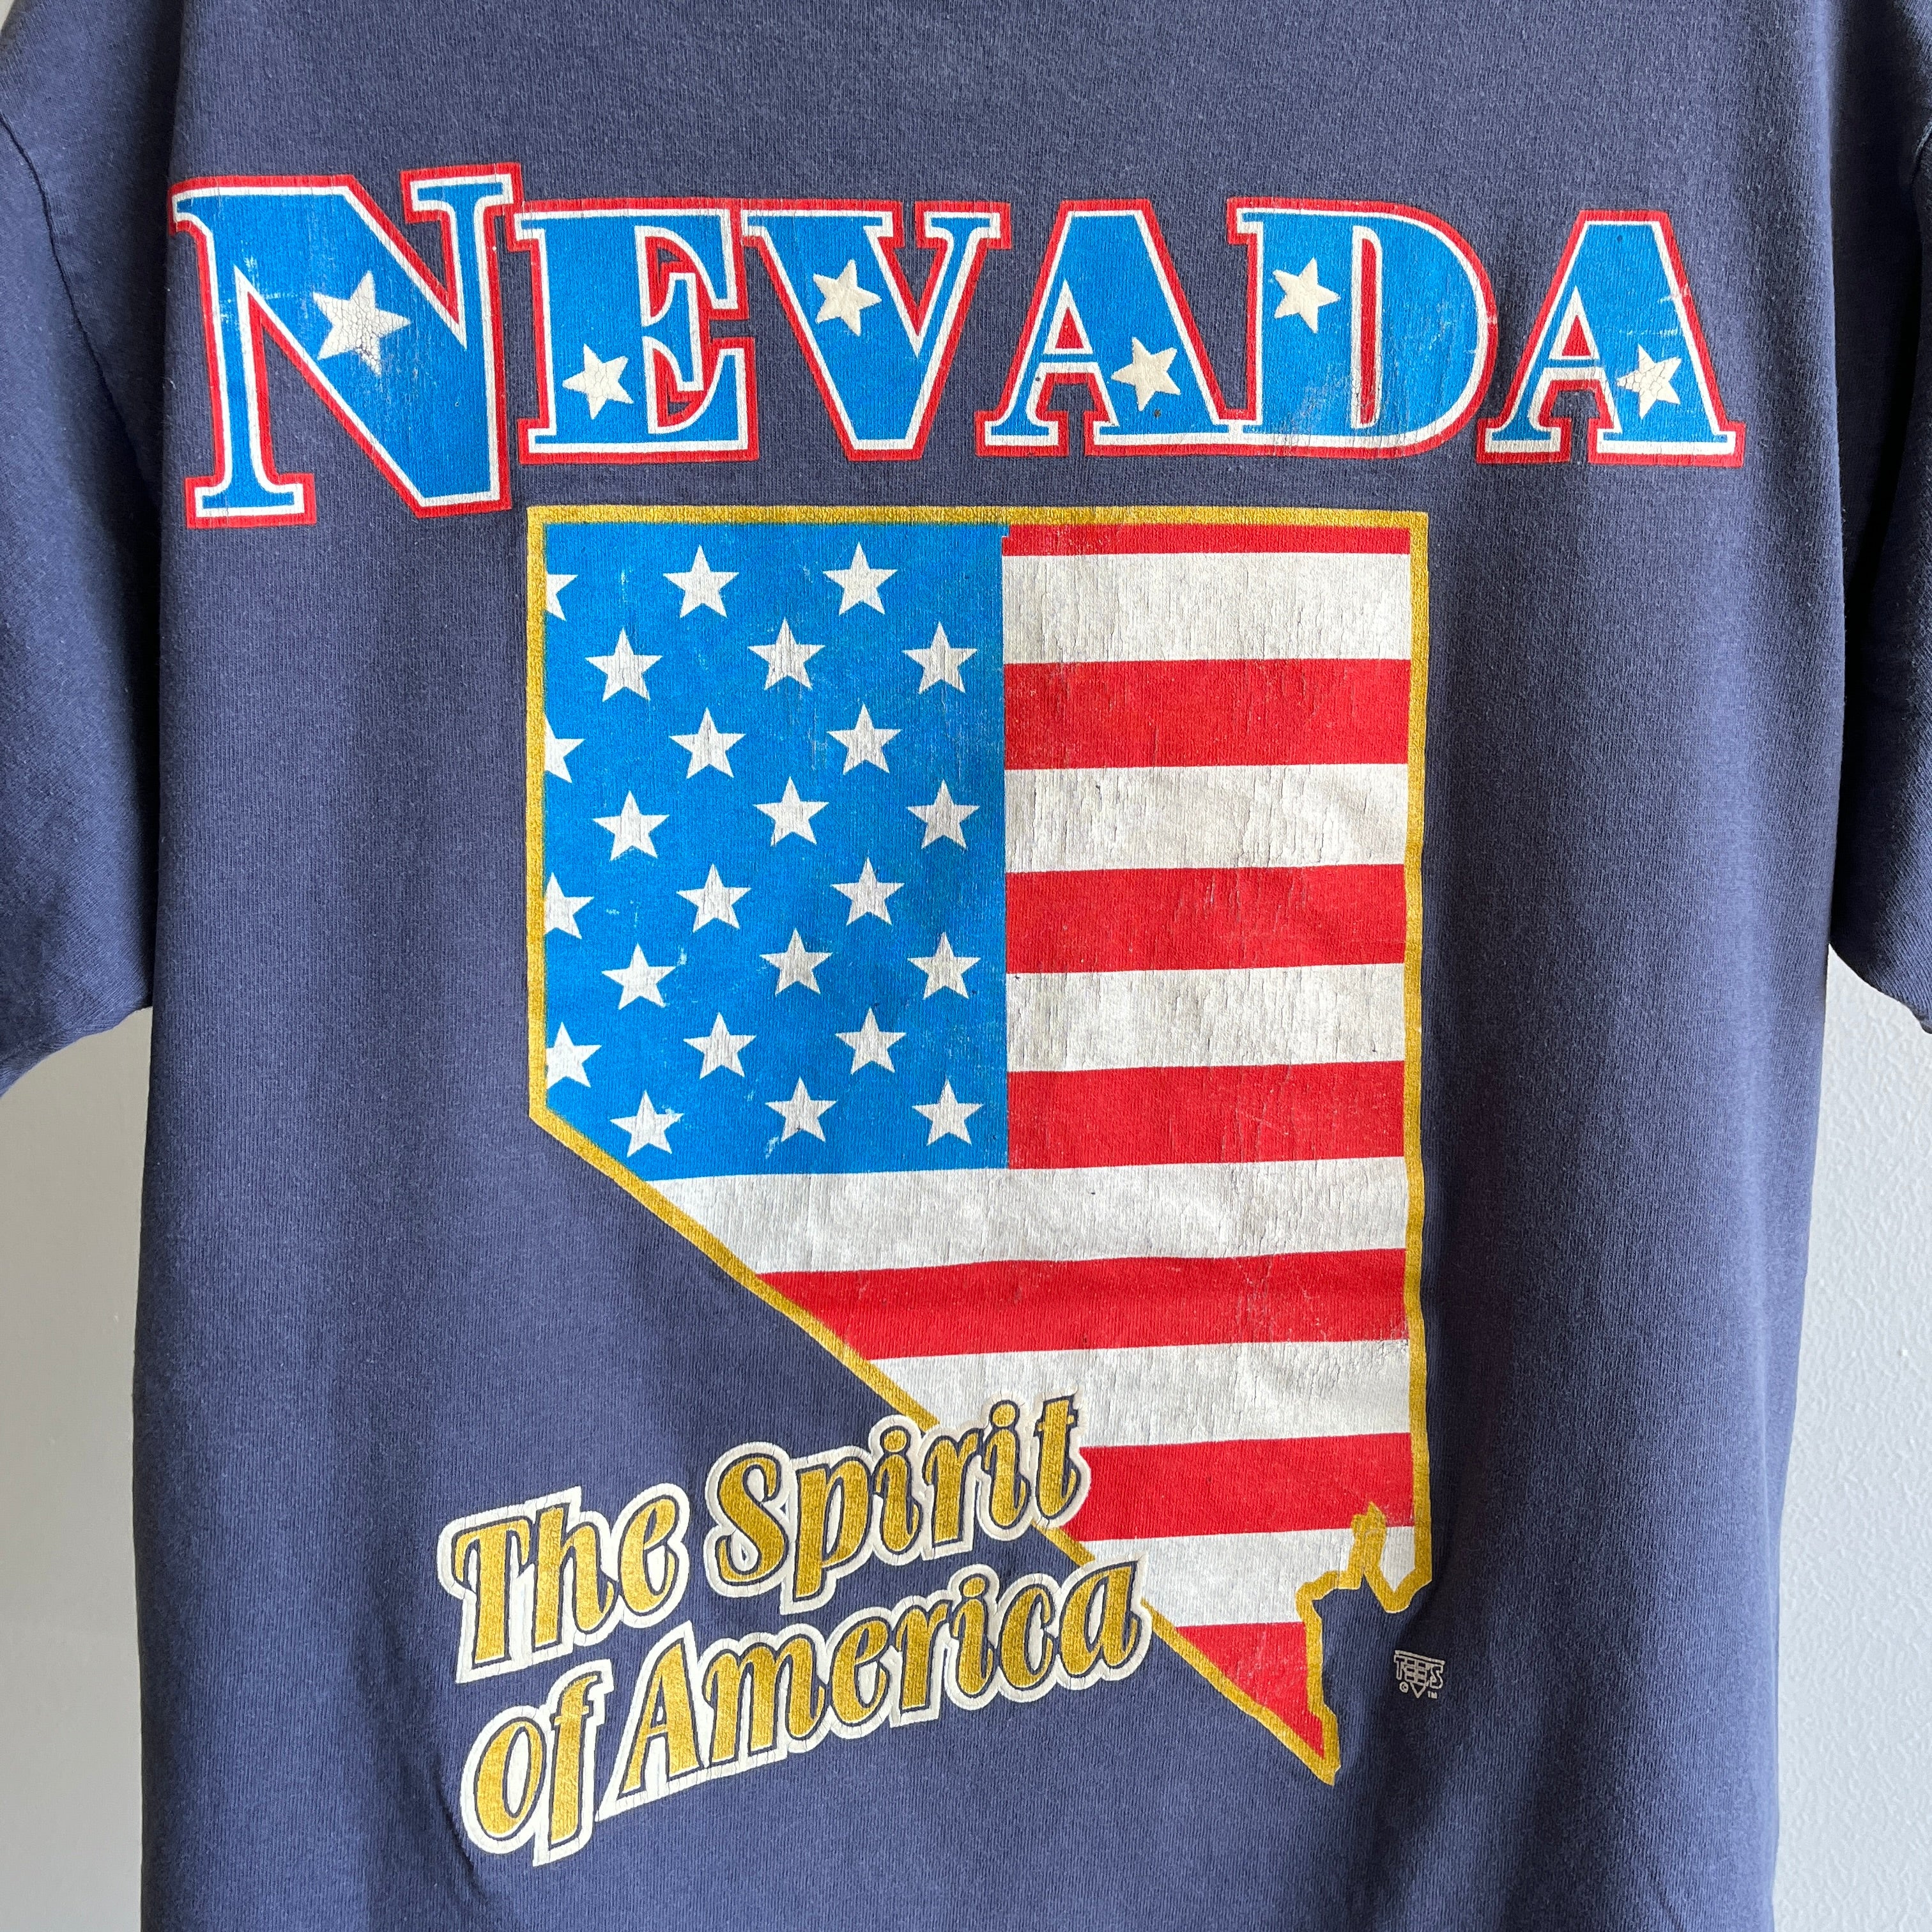 T-shirt Nevada Super Fan Tourist des années 1980